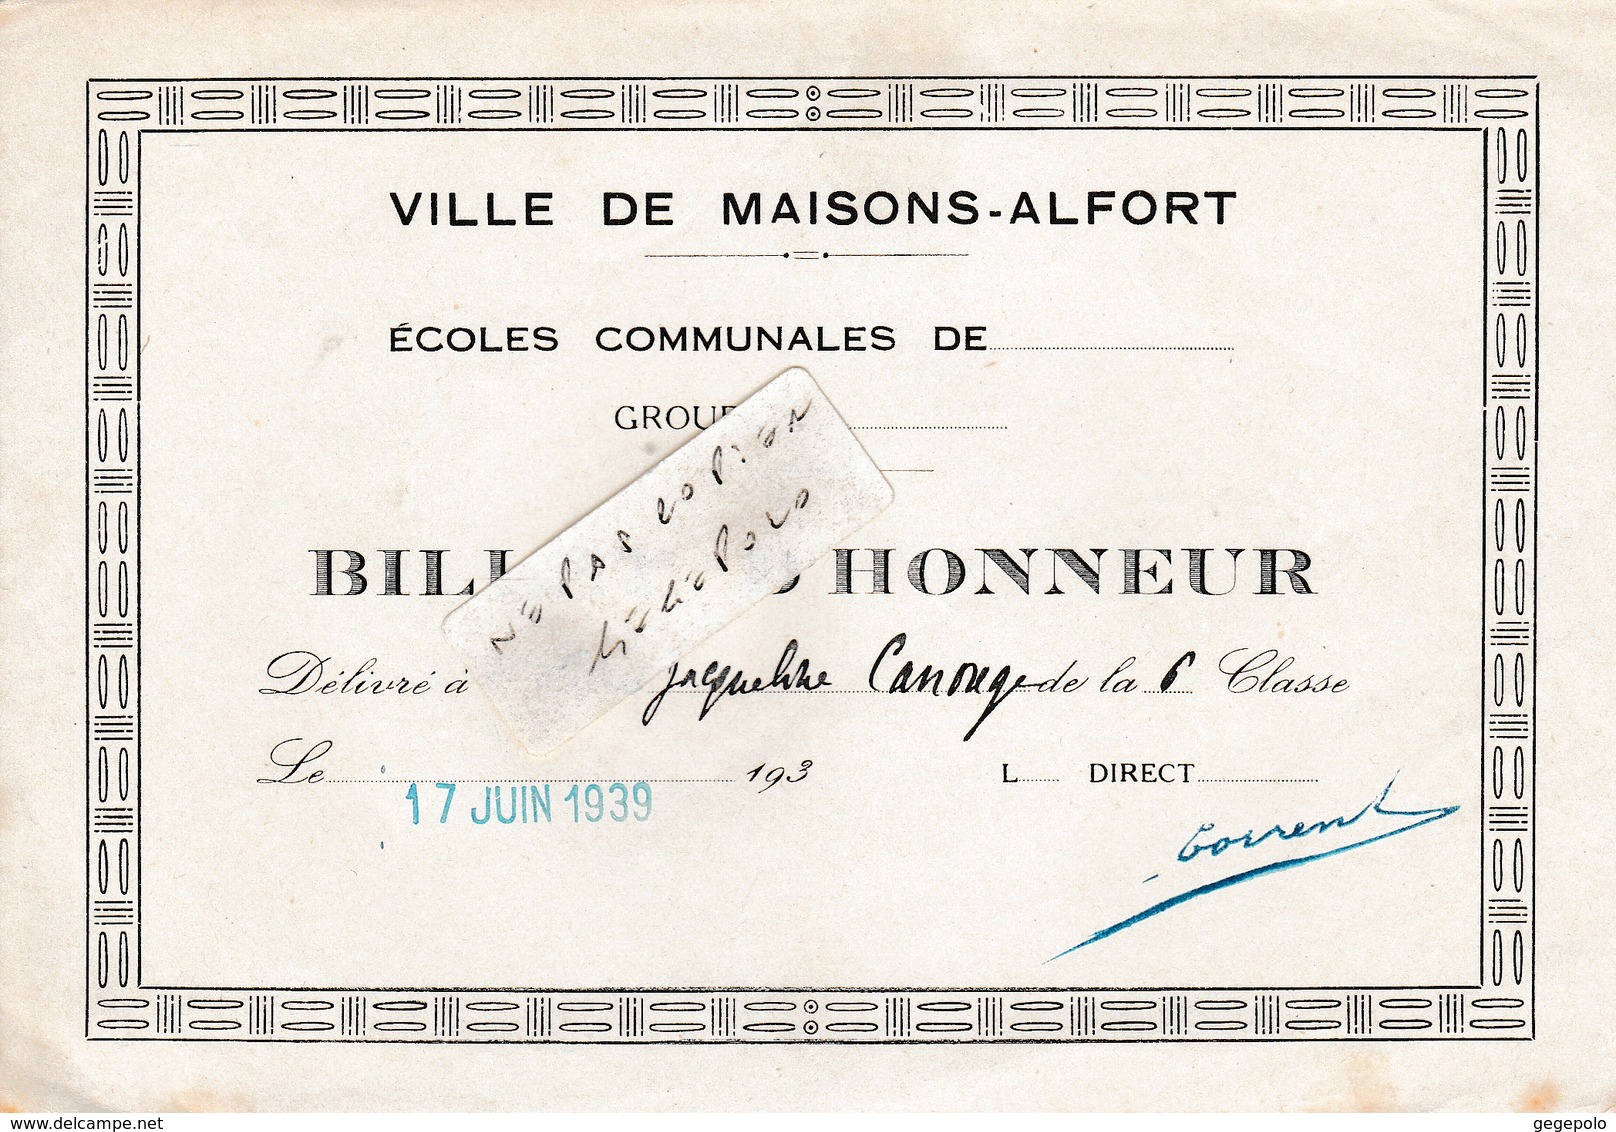 Ville De MAISONS-ALFORT (94) - Ecoles Communales Jules Ferry -  ( 2 ) Billet D'Honneur  ( En L'état D'usage ) - Diplômes & Bulletins Scolaires